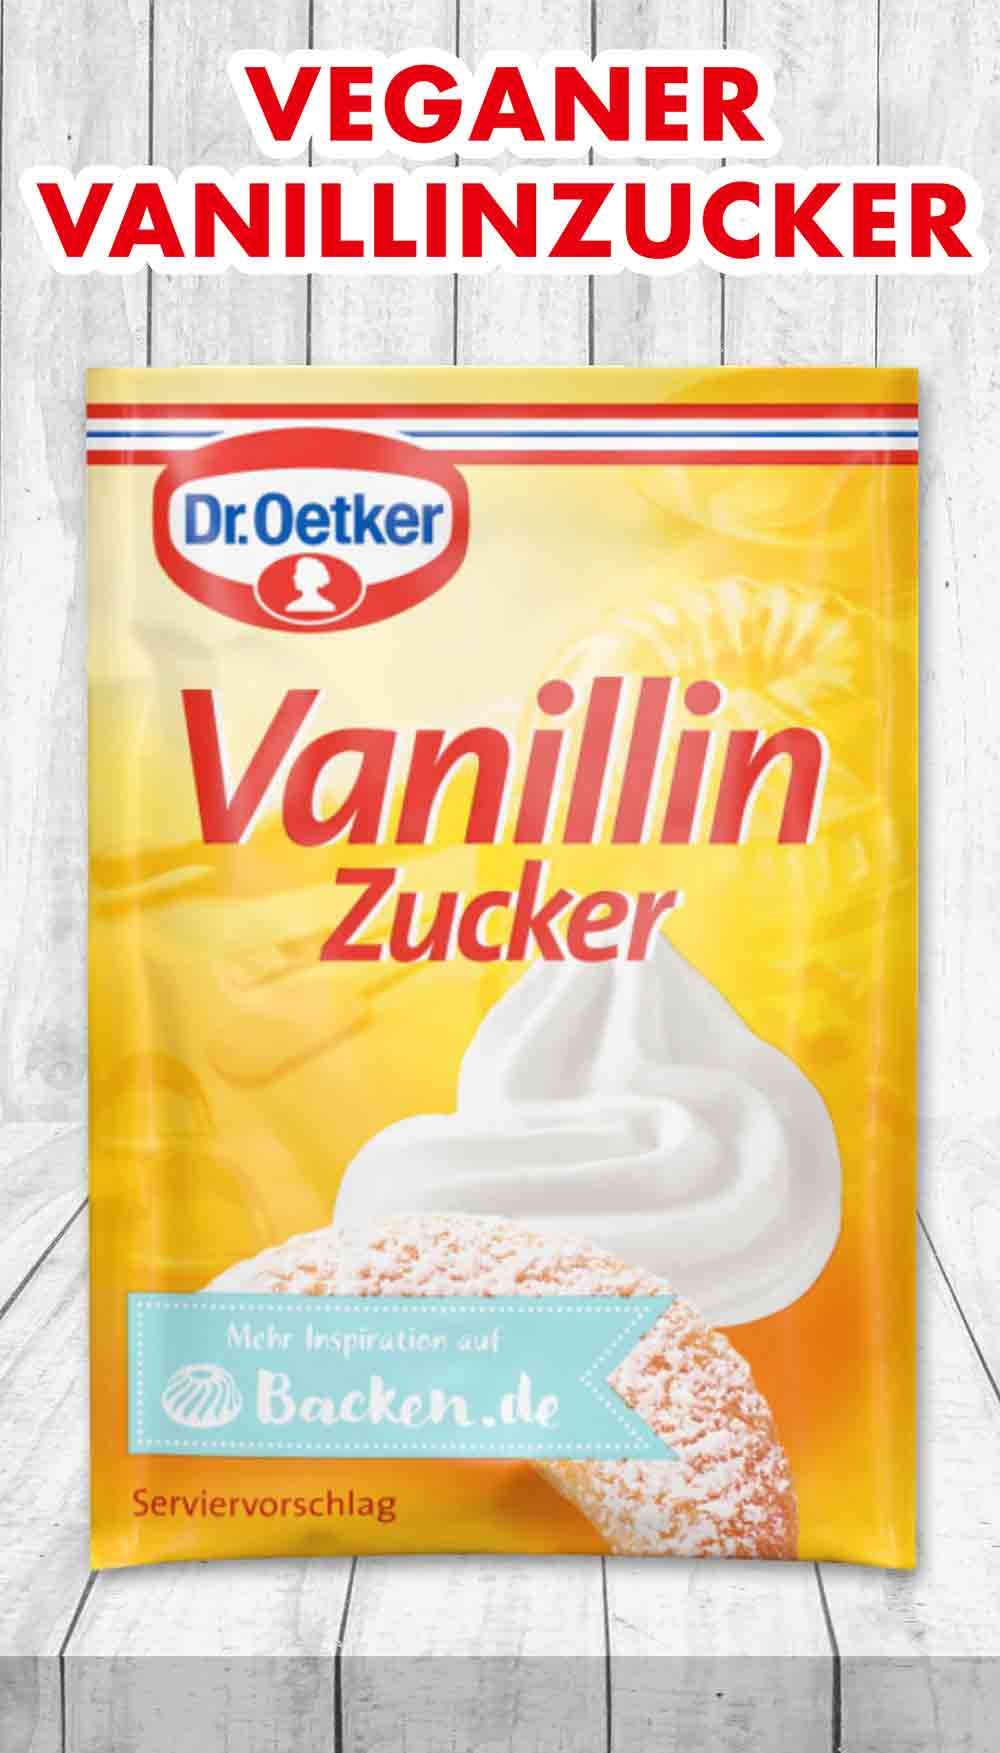 Produkttest Veganer Vanillinzucker von Dr. Oetker